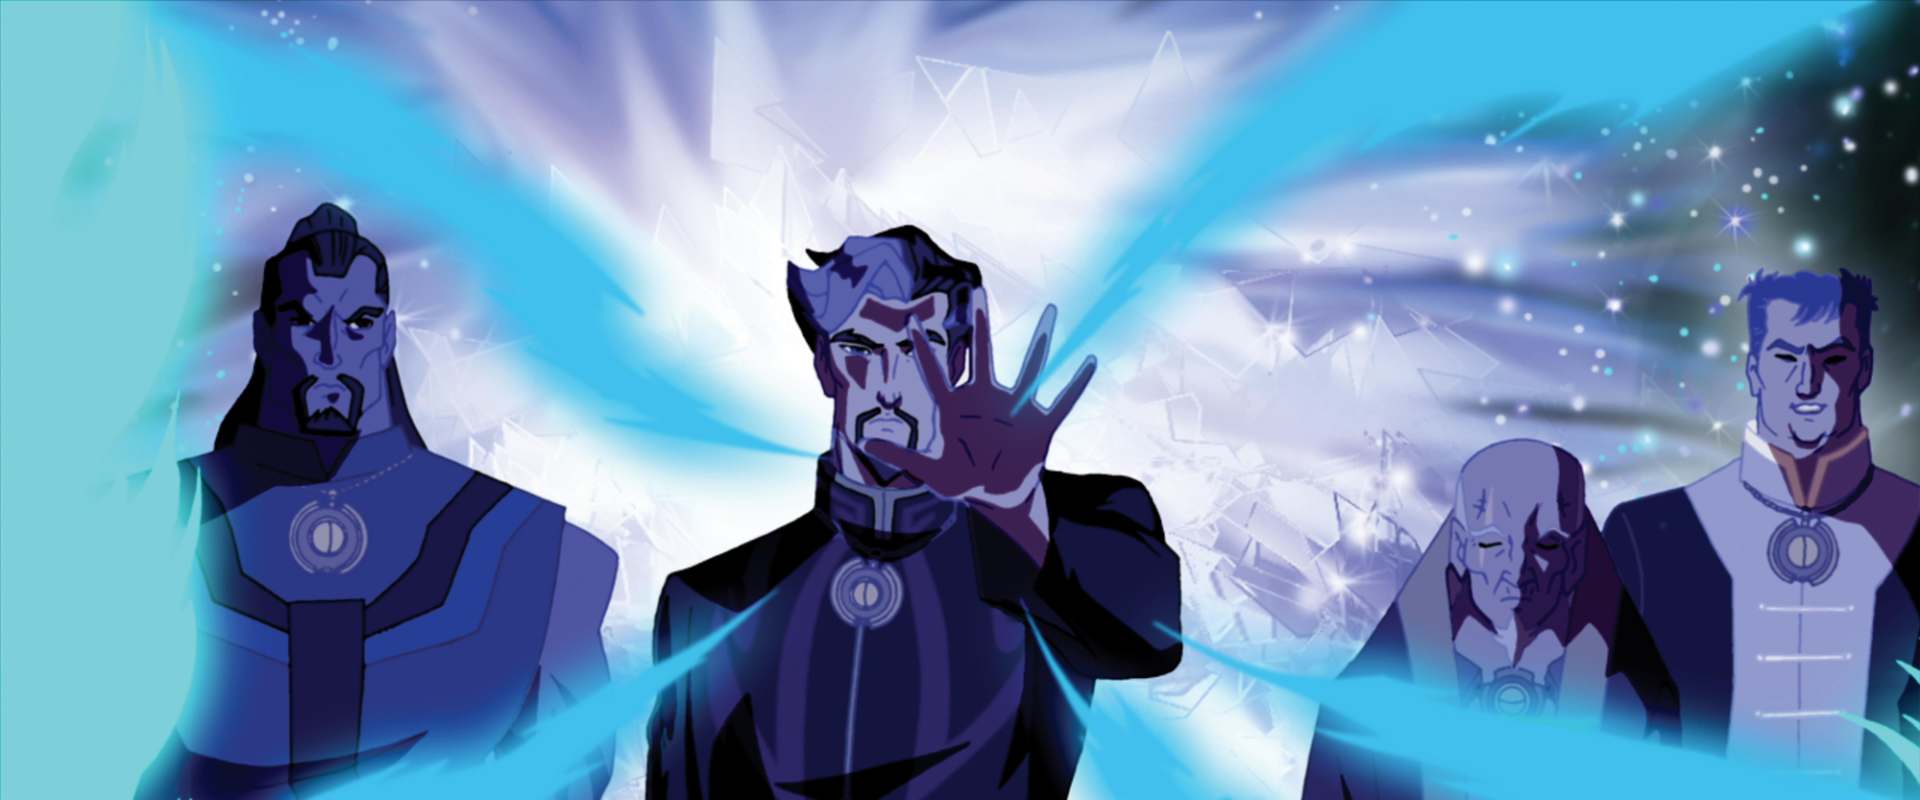 Doctor Strange background 1